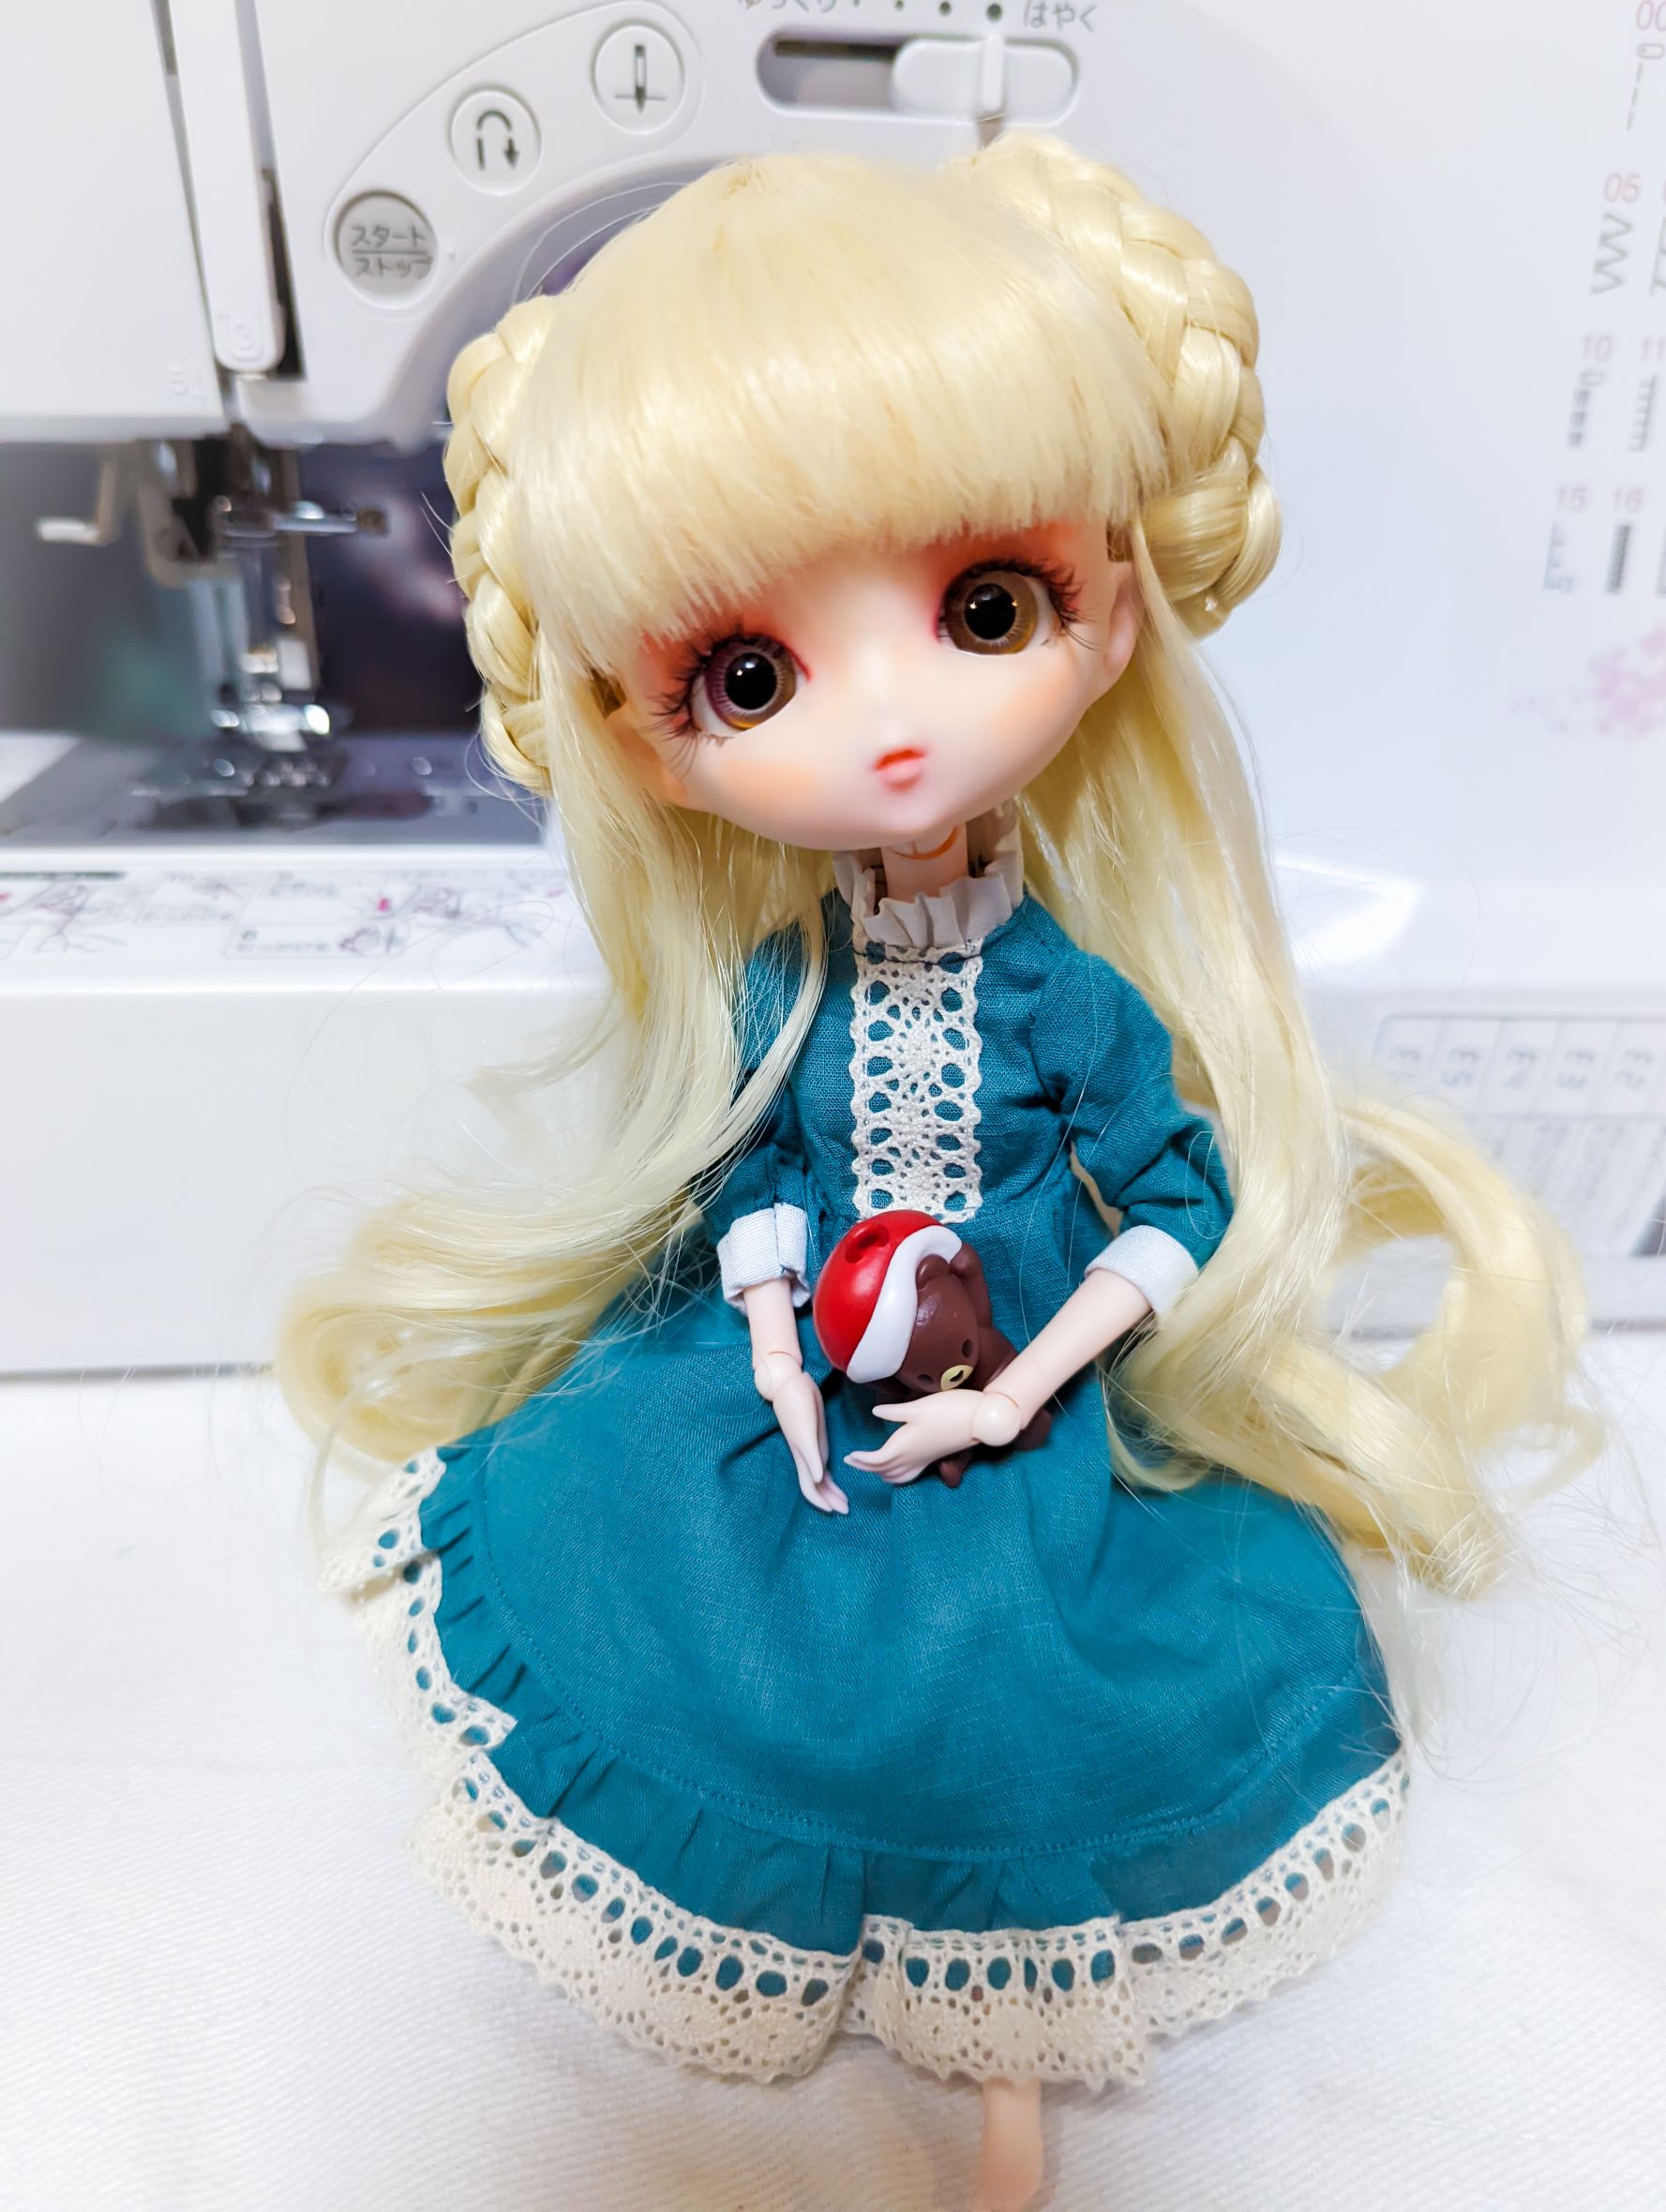 【未使用品】 ハルモニアブルーム Blythe ドレス harmoniabloom おもちゃ/人形